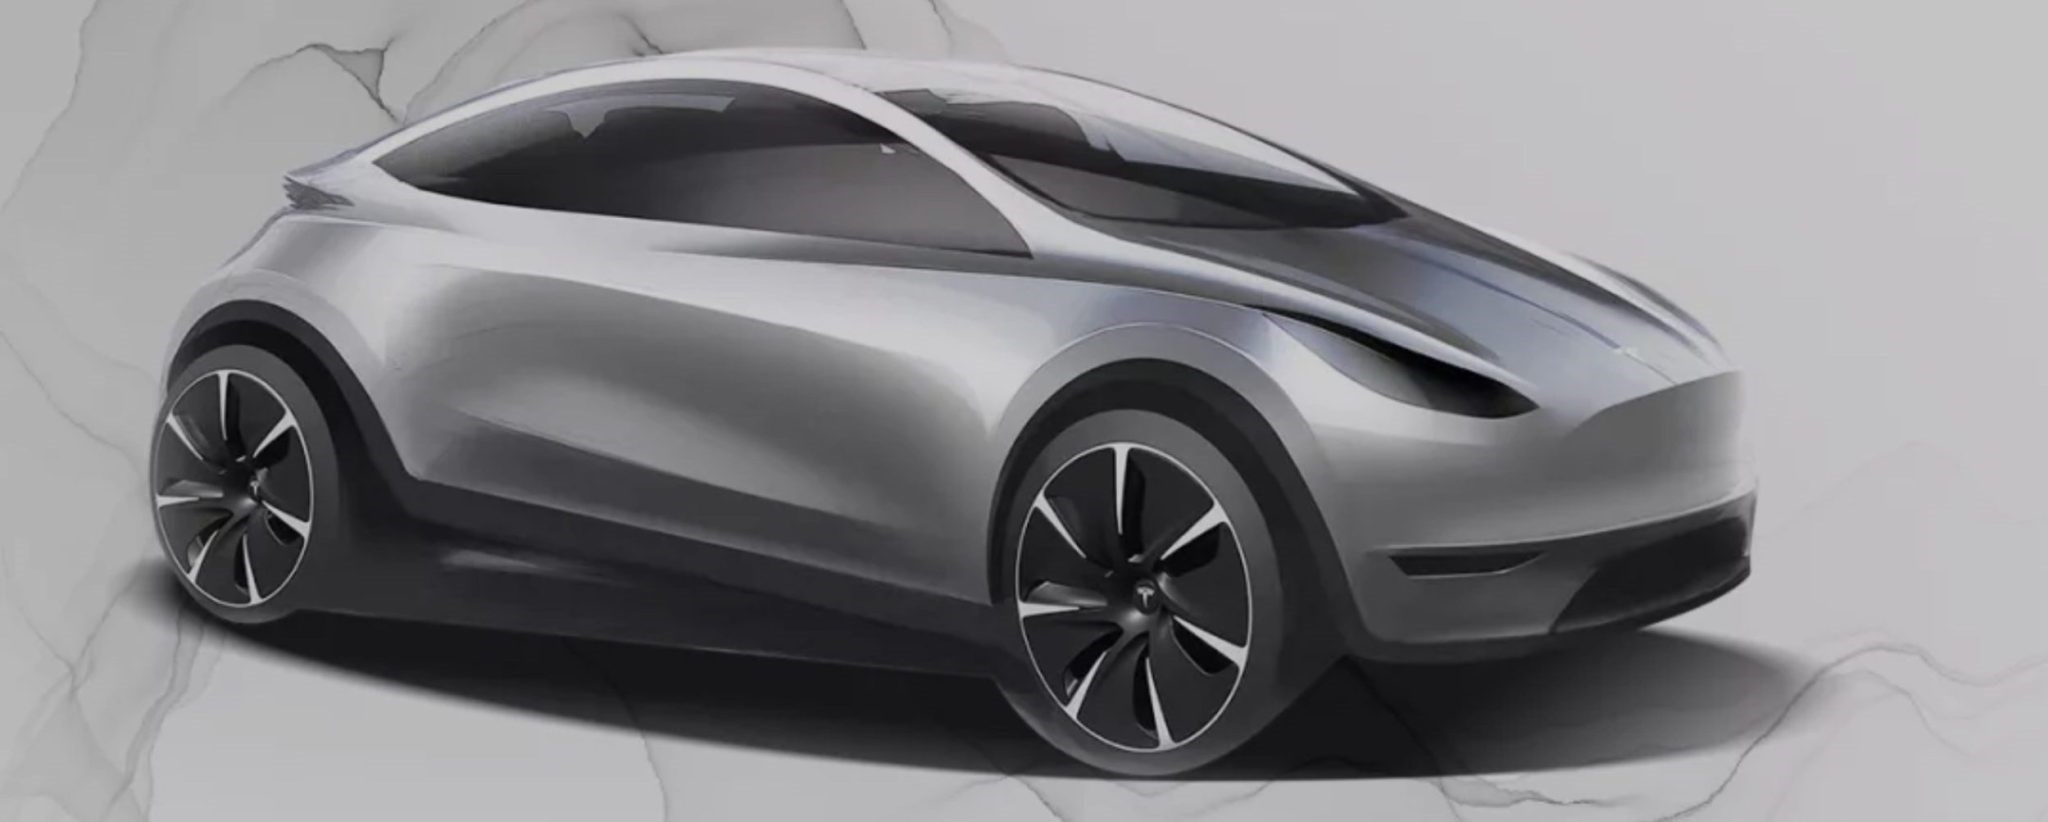 Tesla’nın Çin’de verdiği iş ilanı yeni bir otomobil modelini işaret ediyor olabilir